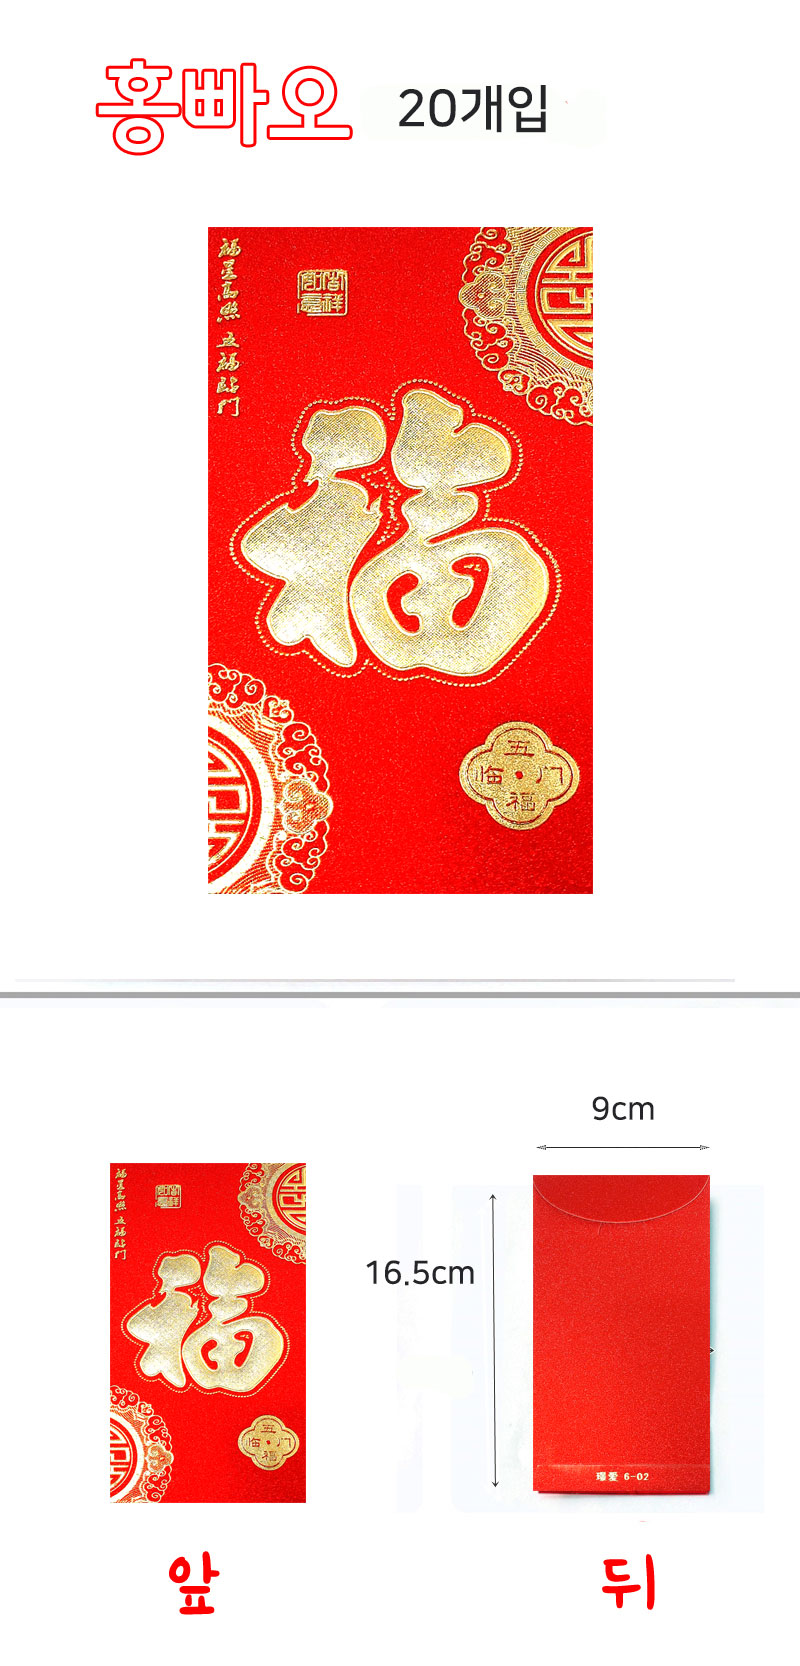 홍빠오 중국 전통 빨간 봉투 6,900원 - 지아몰 디자인문구, 카드/편지/봉투, 용돈봉투, 전통 바보사랑 홍빠오 중국 전통 빨간 봉투 6,900원 - 지아몰 디자인문구, 카드/편지/봉투, 용돈봉투, 전통 바보사랑